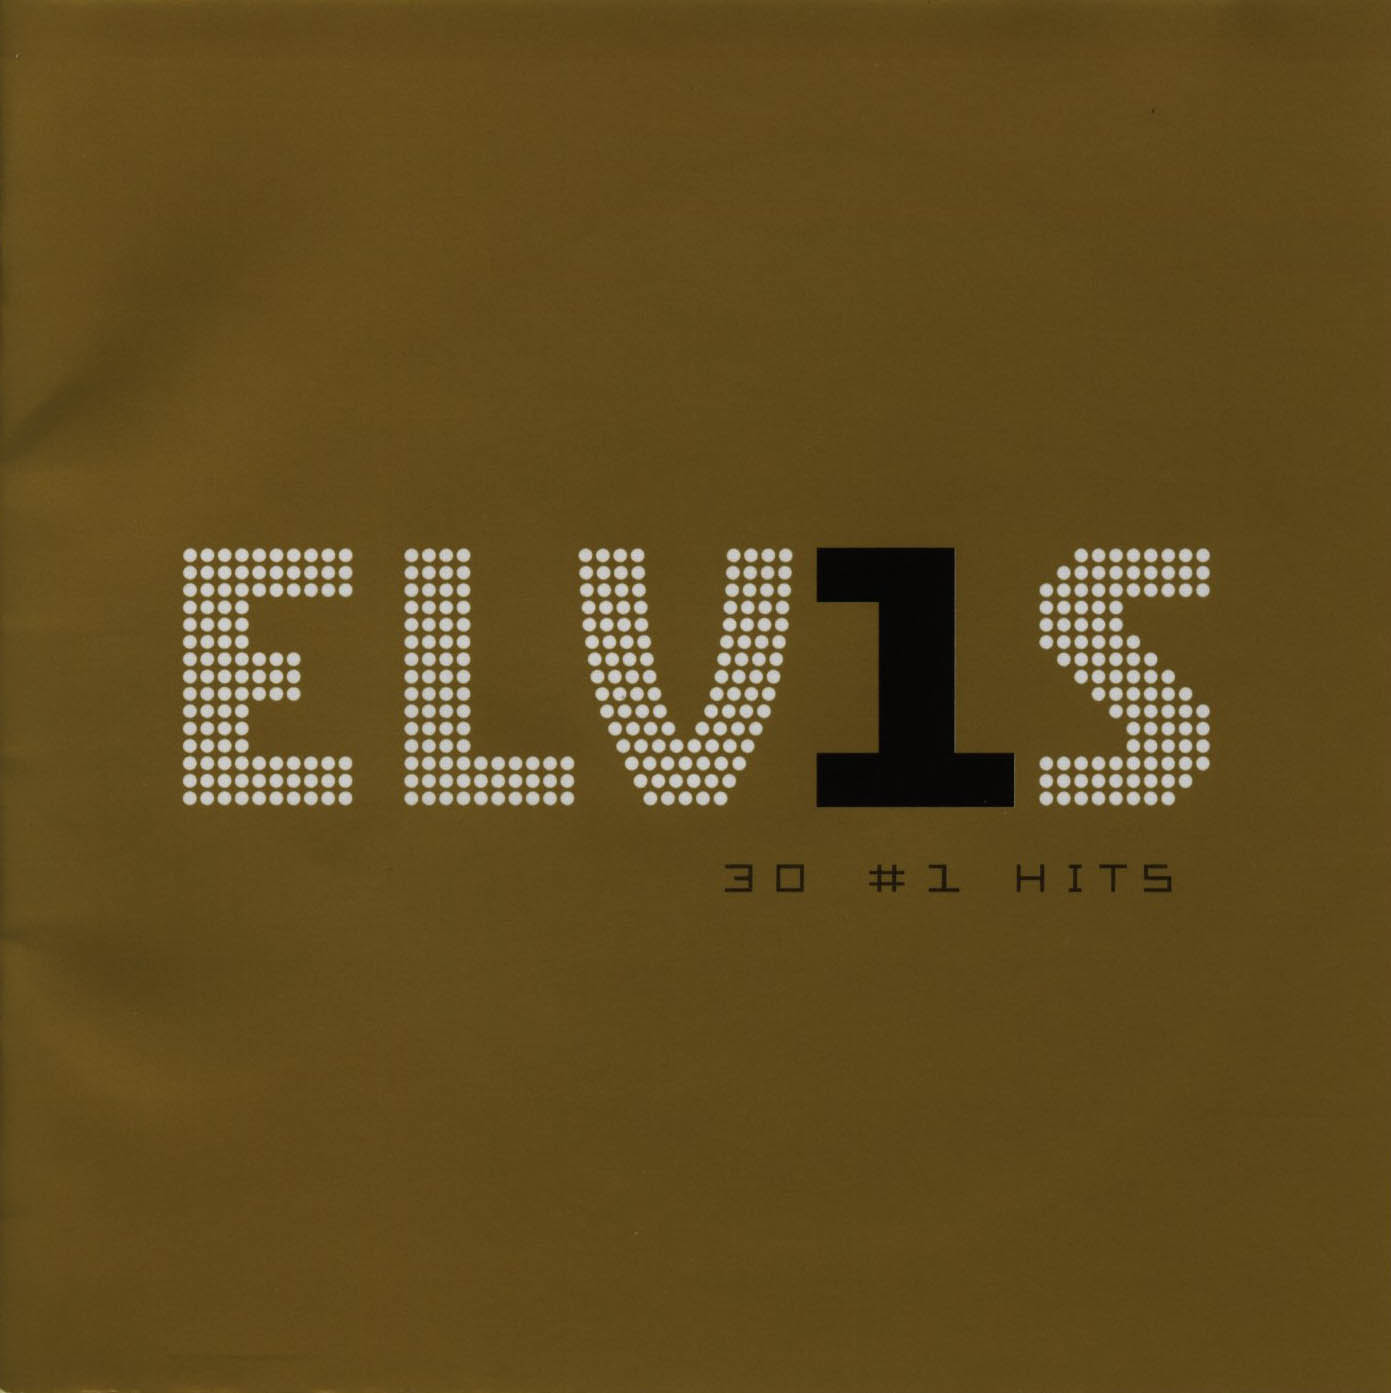 Cartula Frontal de Elvis Presley - Elvis 30 # 1 Hits